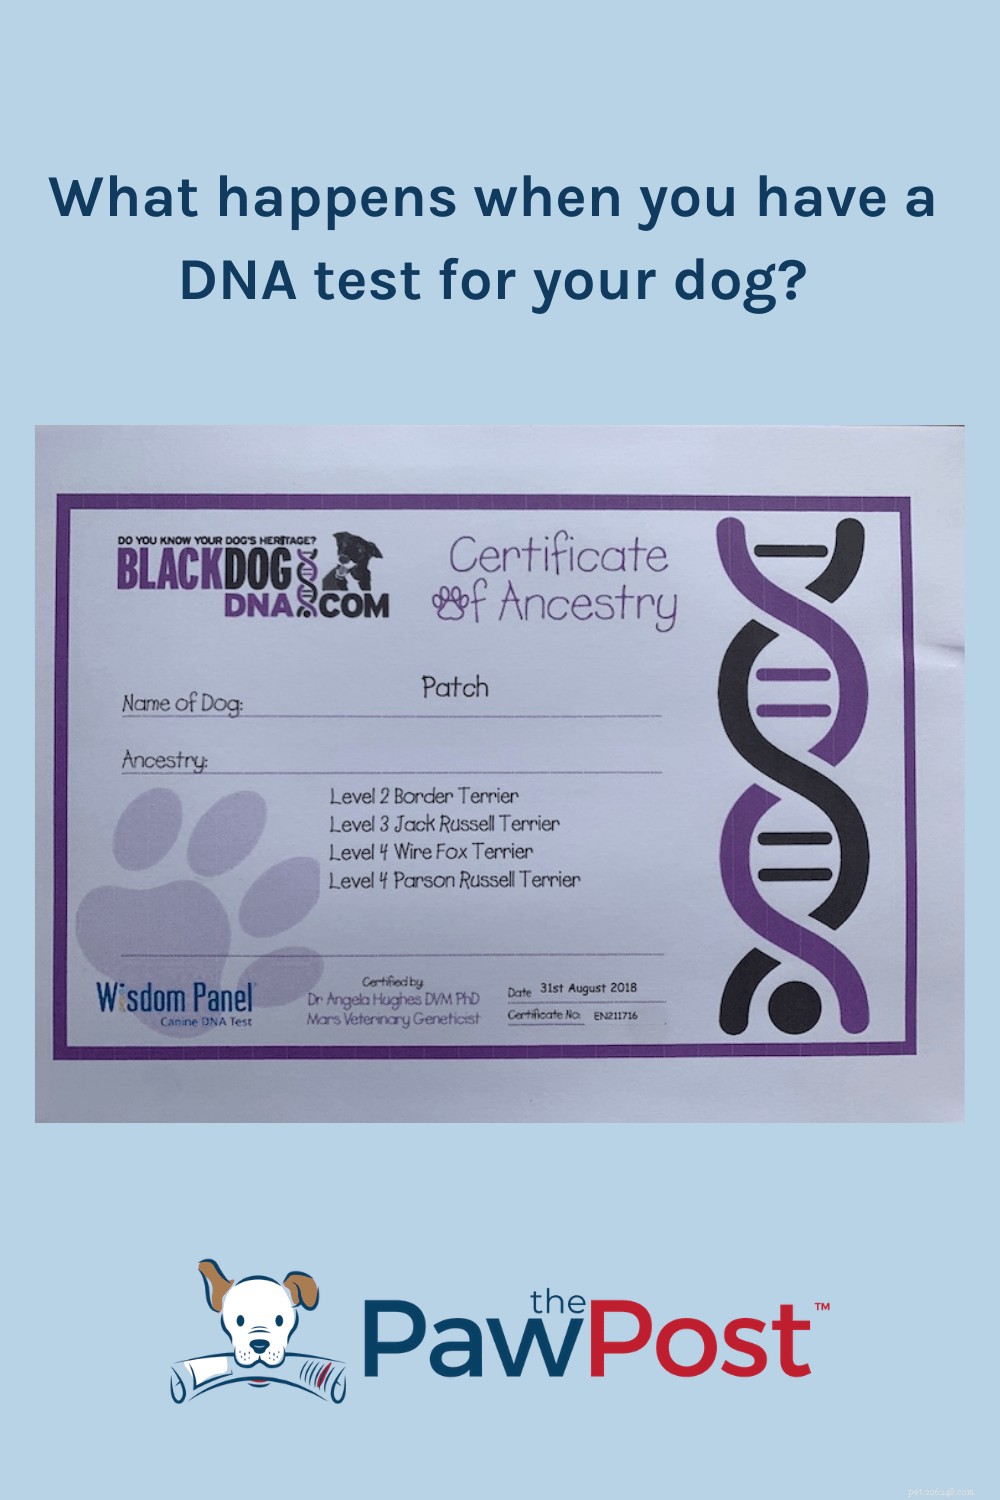 강아지의 DNA 검사를 받으면 어떻게 됩니까